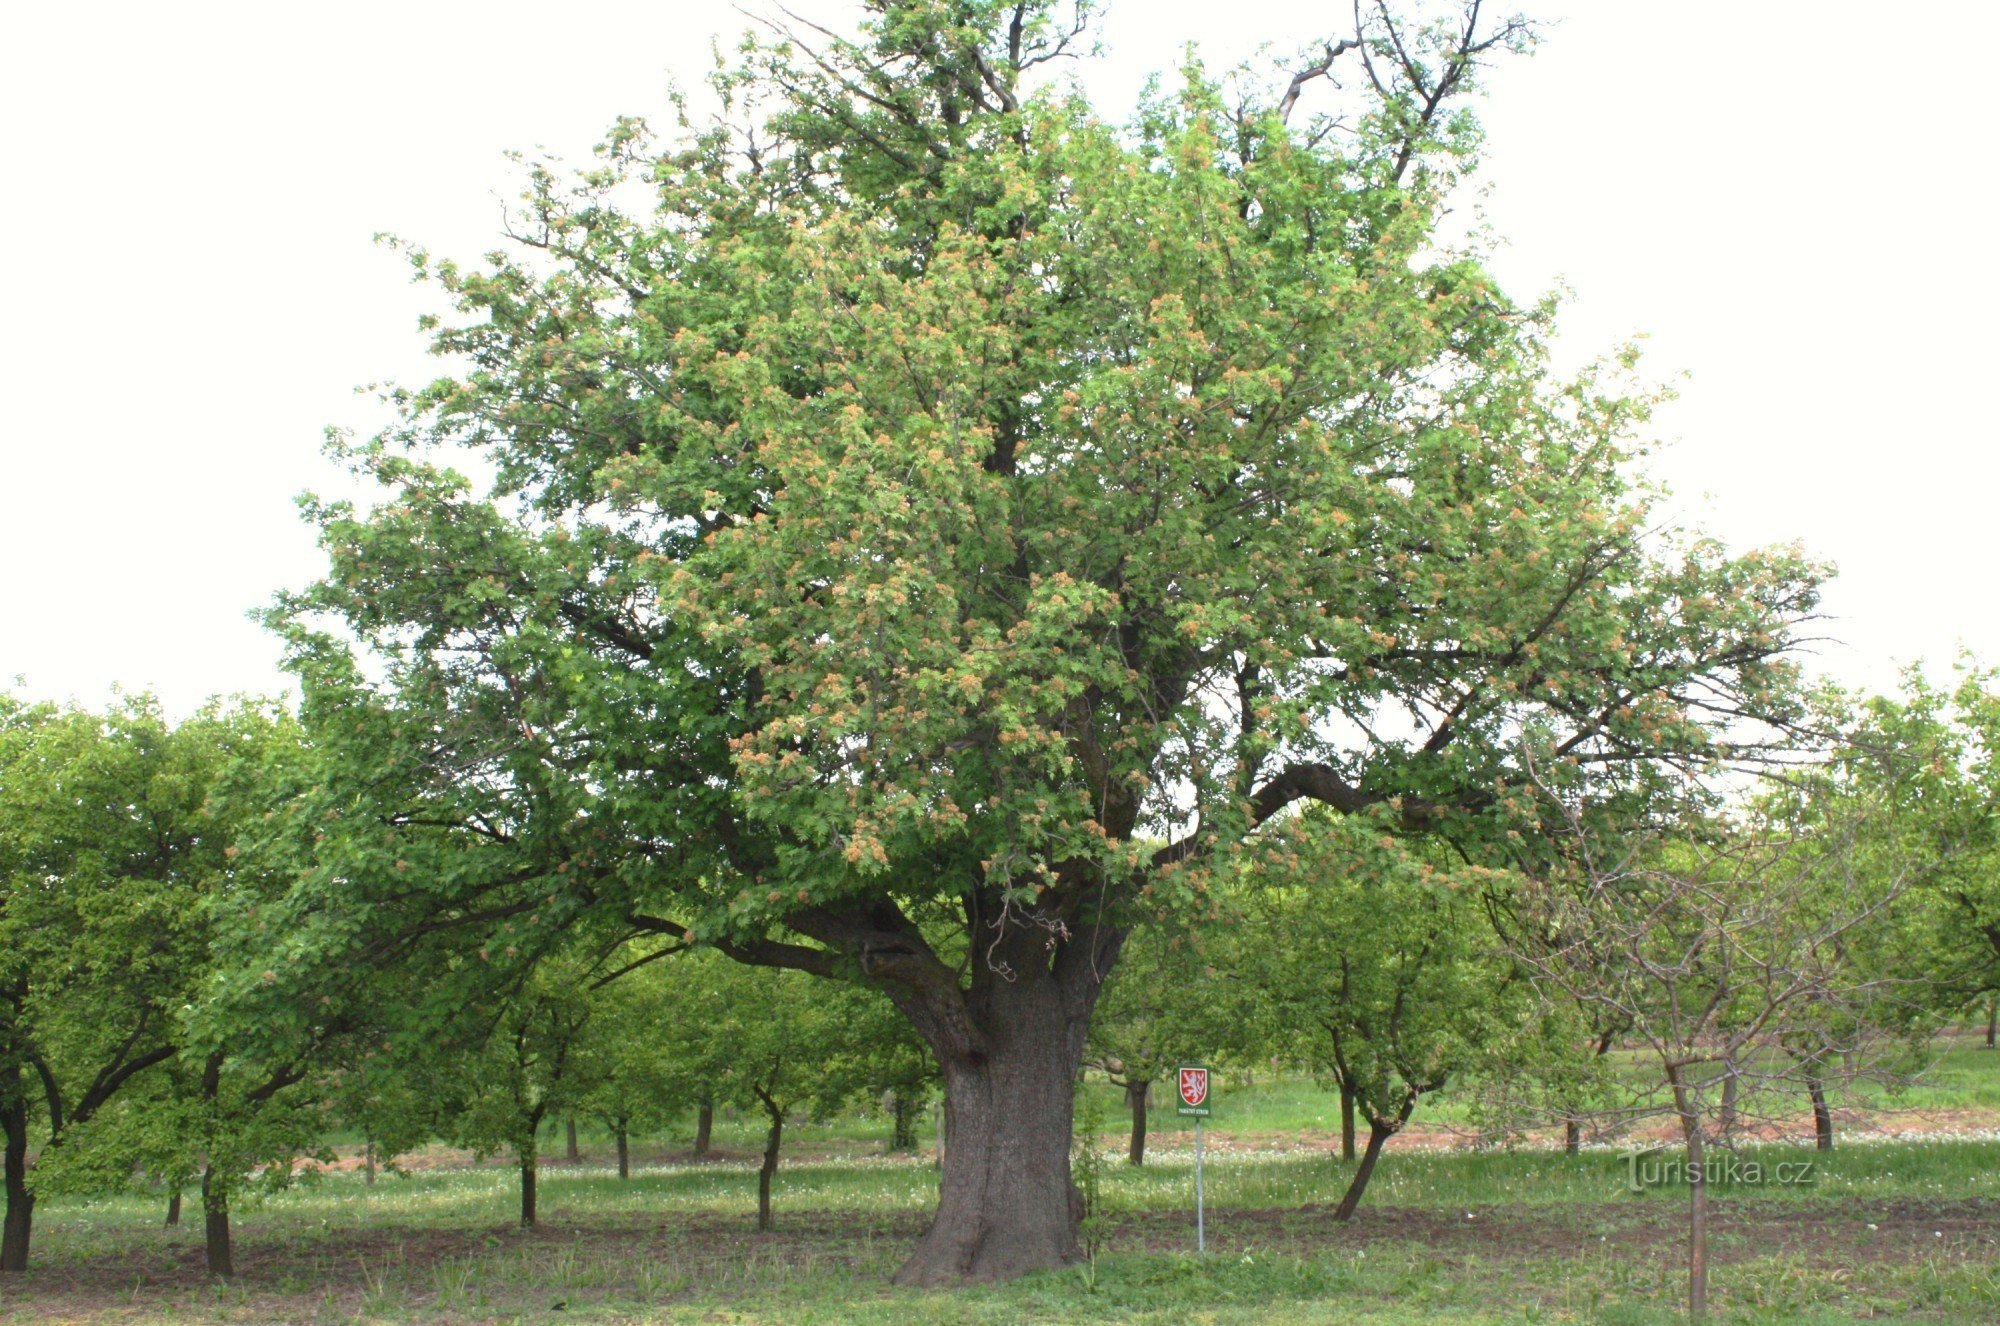 Nemčičky - ett minnesvärt körsbärsträd